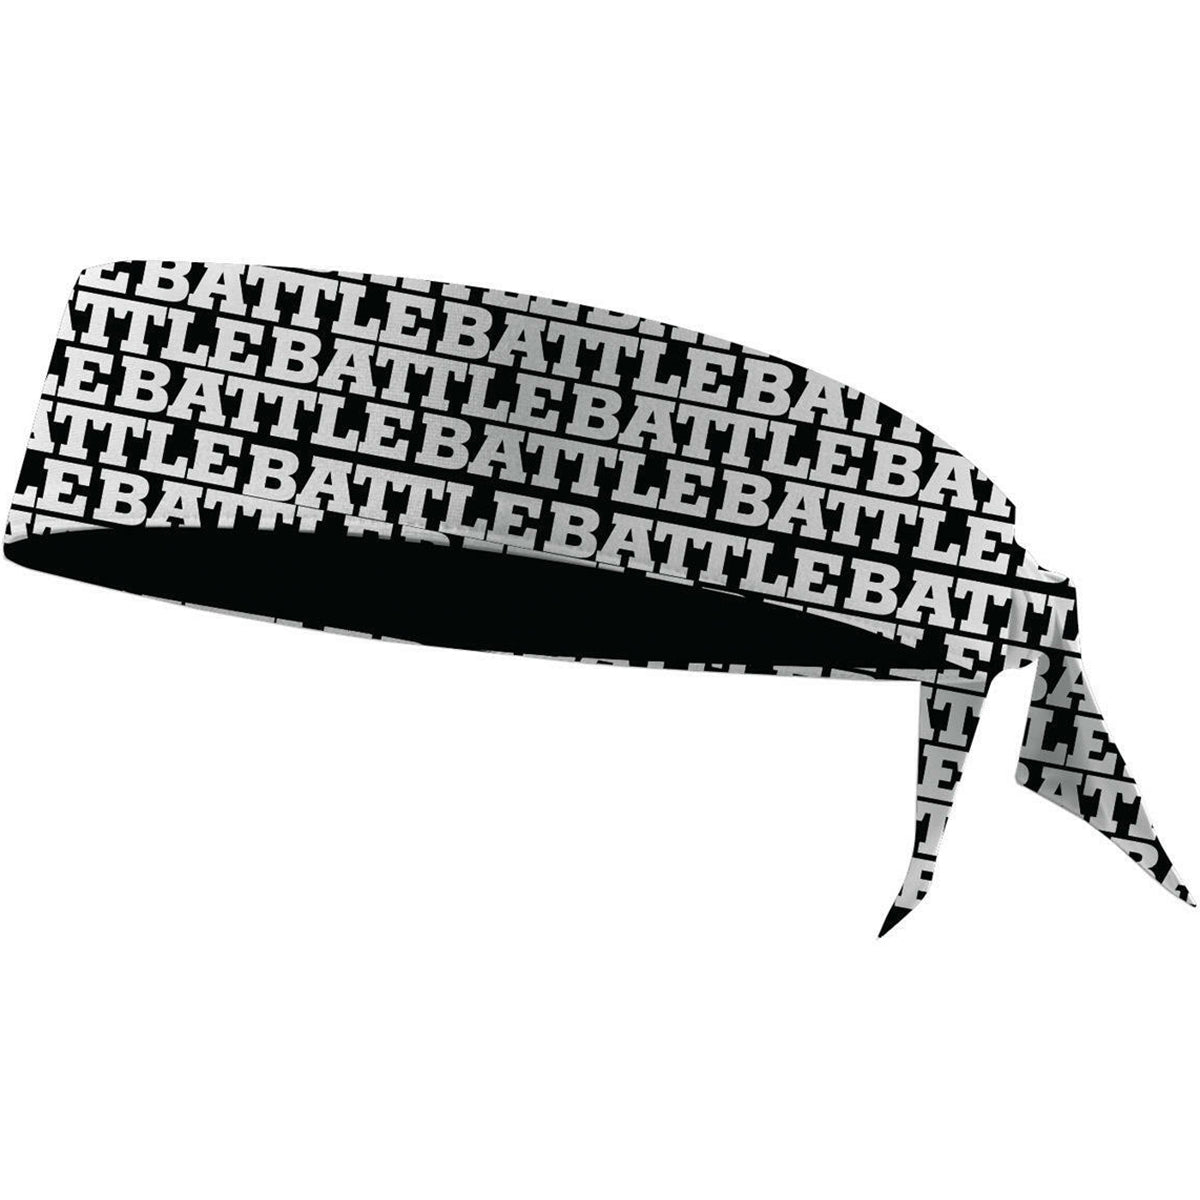 Battle Sports Battle Repeater Logo Football Head Tie Battle Sports